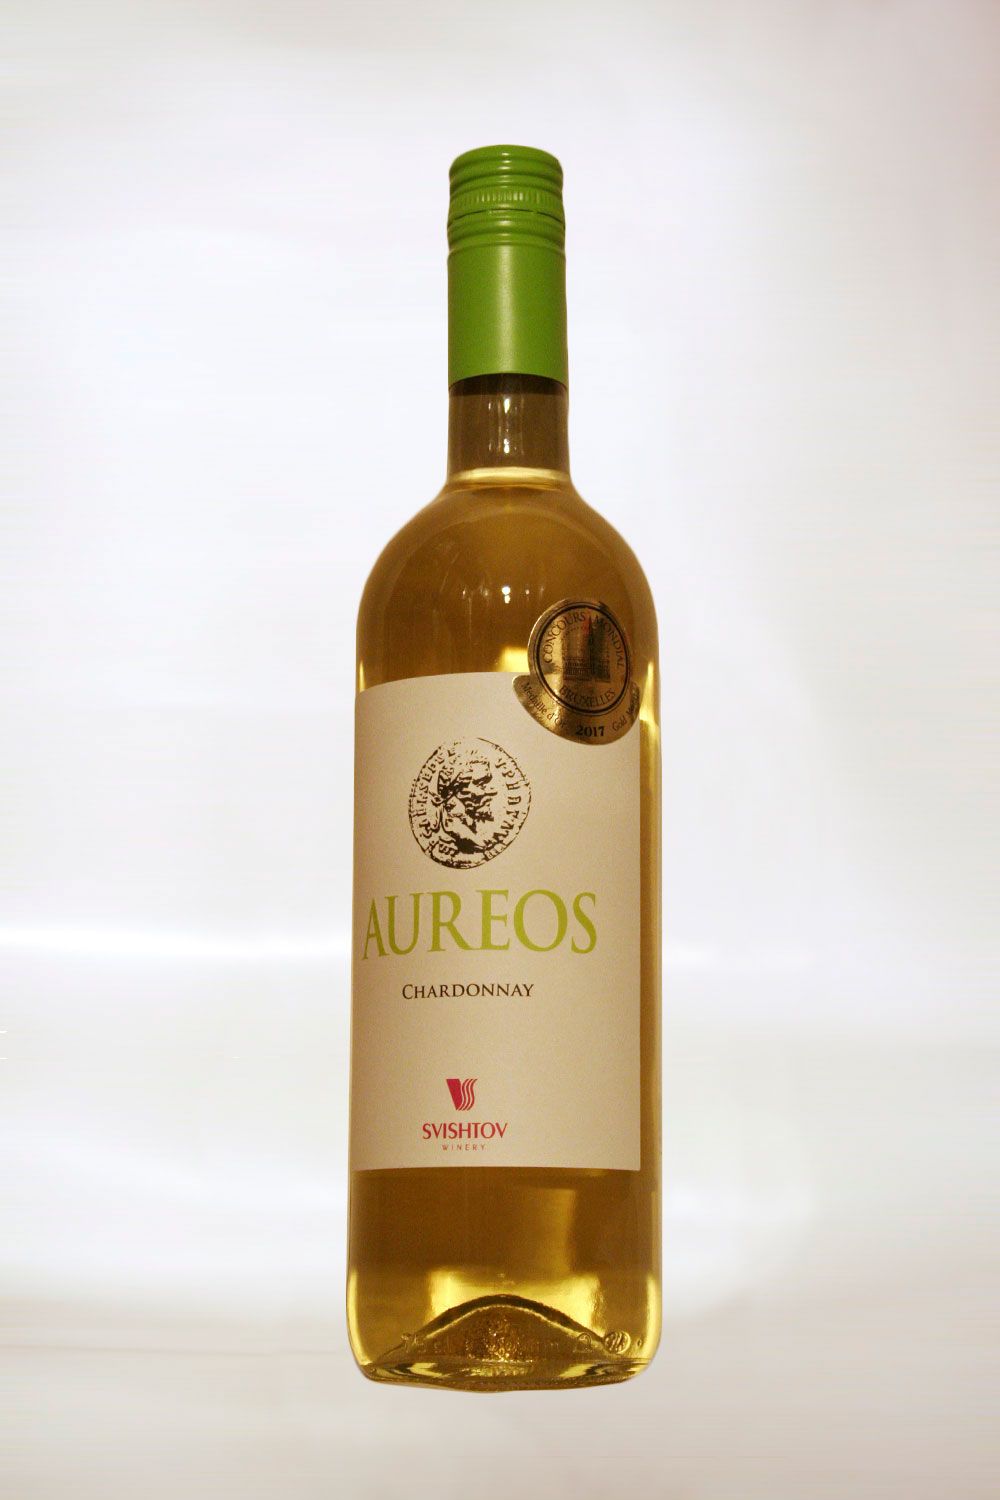 Aureos Chardonnay 2016